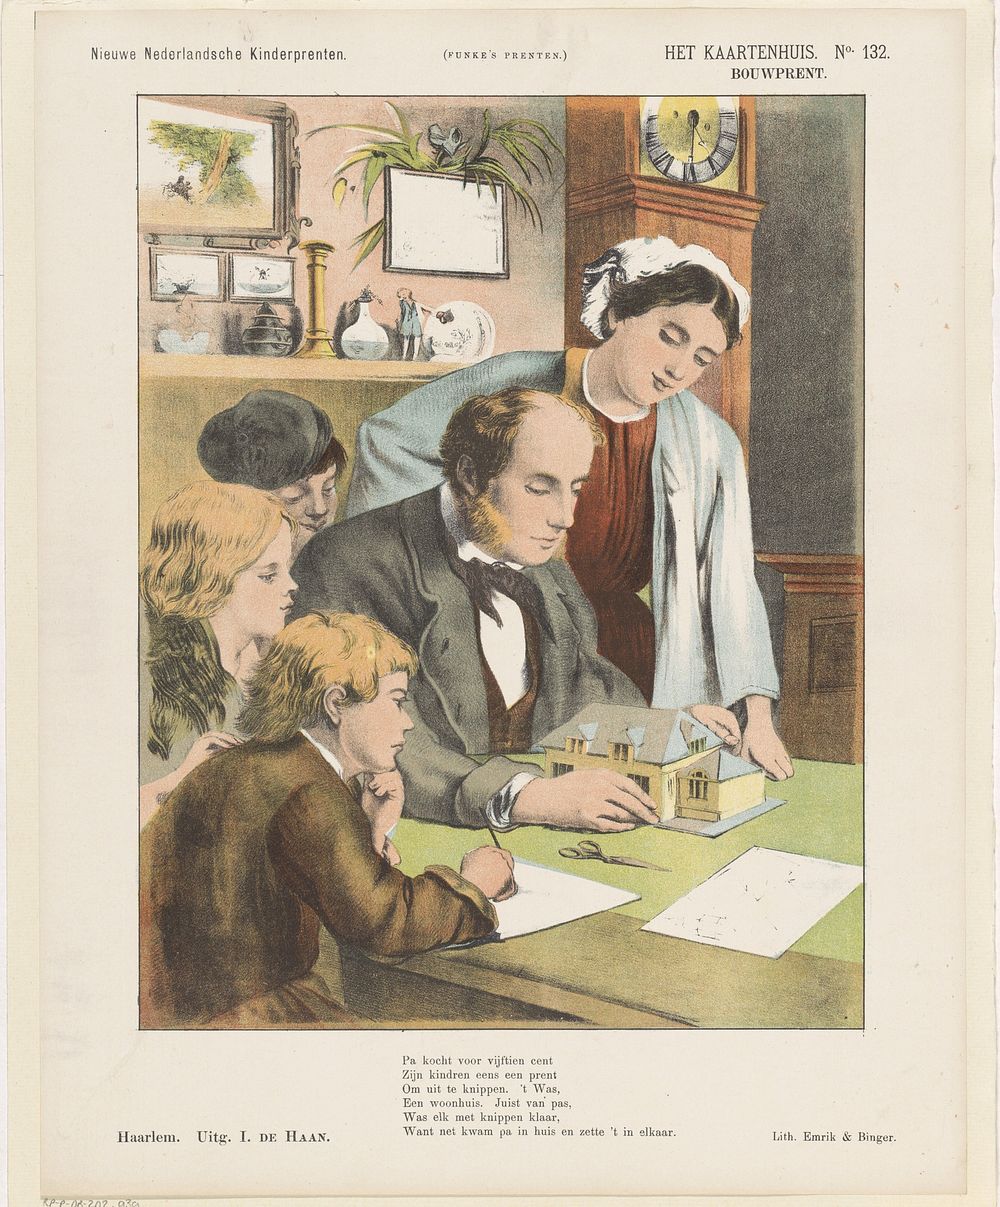 Het kaartenhuis / Bouwprent (1875 - 1903) by Jan de Haan, Emrik and Binger and anonymous